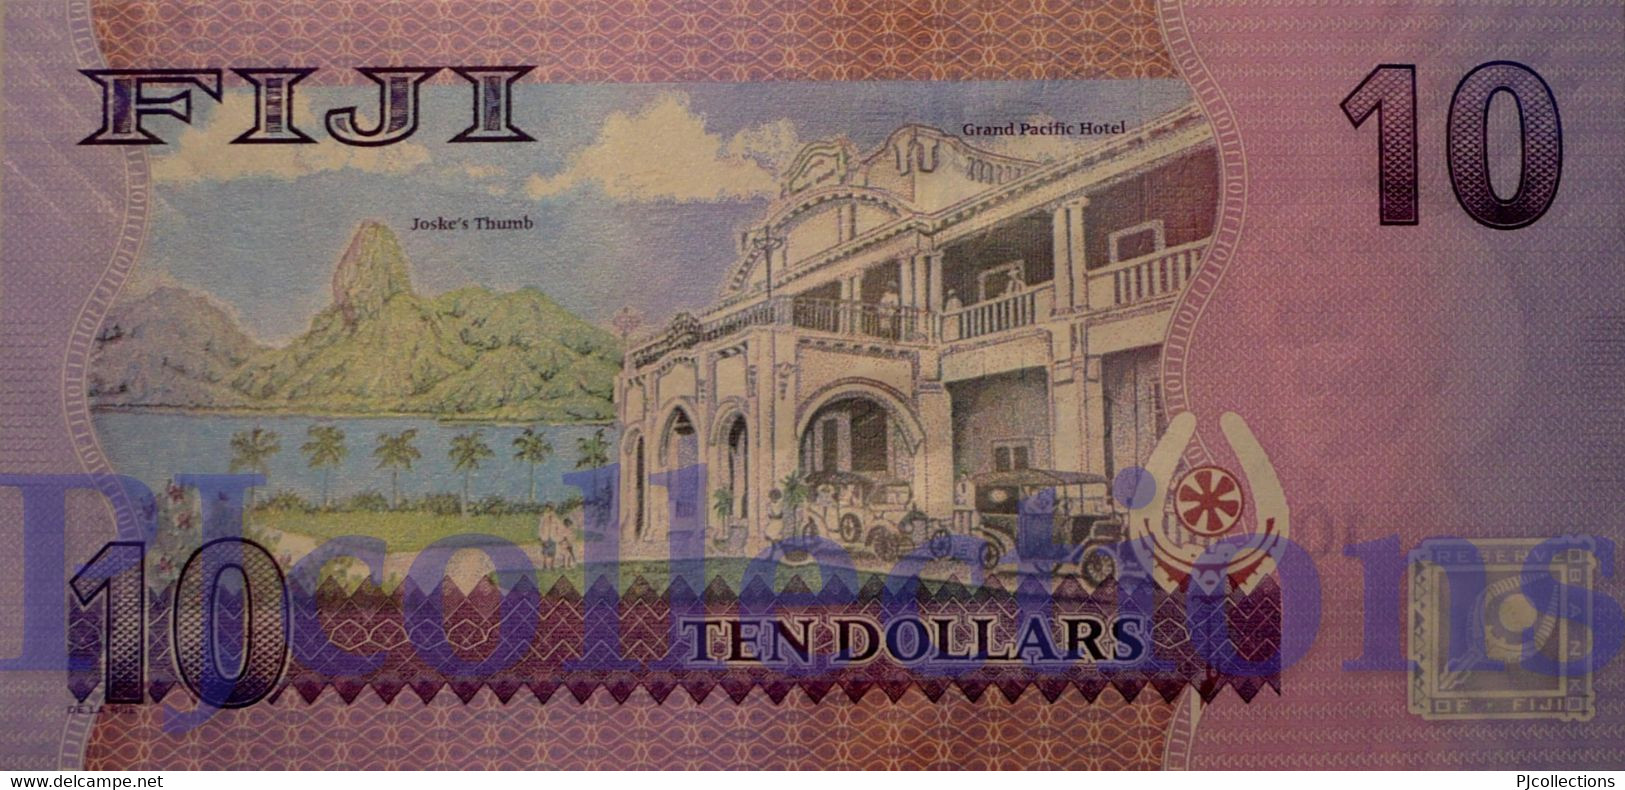 FIJI 10 DOLLARS 2013 PICK 116a UNC PREFIX "FFA" LOW SERIAL NUMBER - Fidji